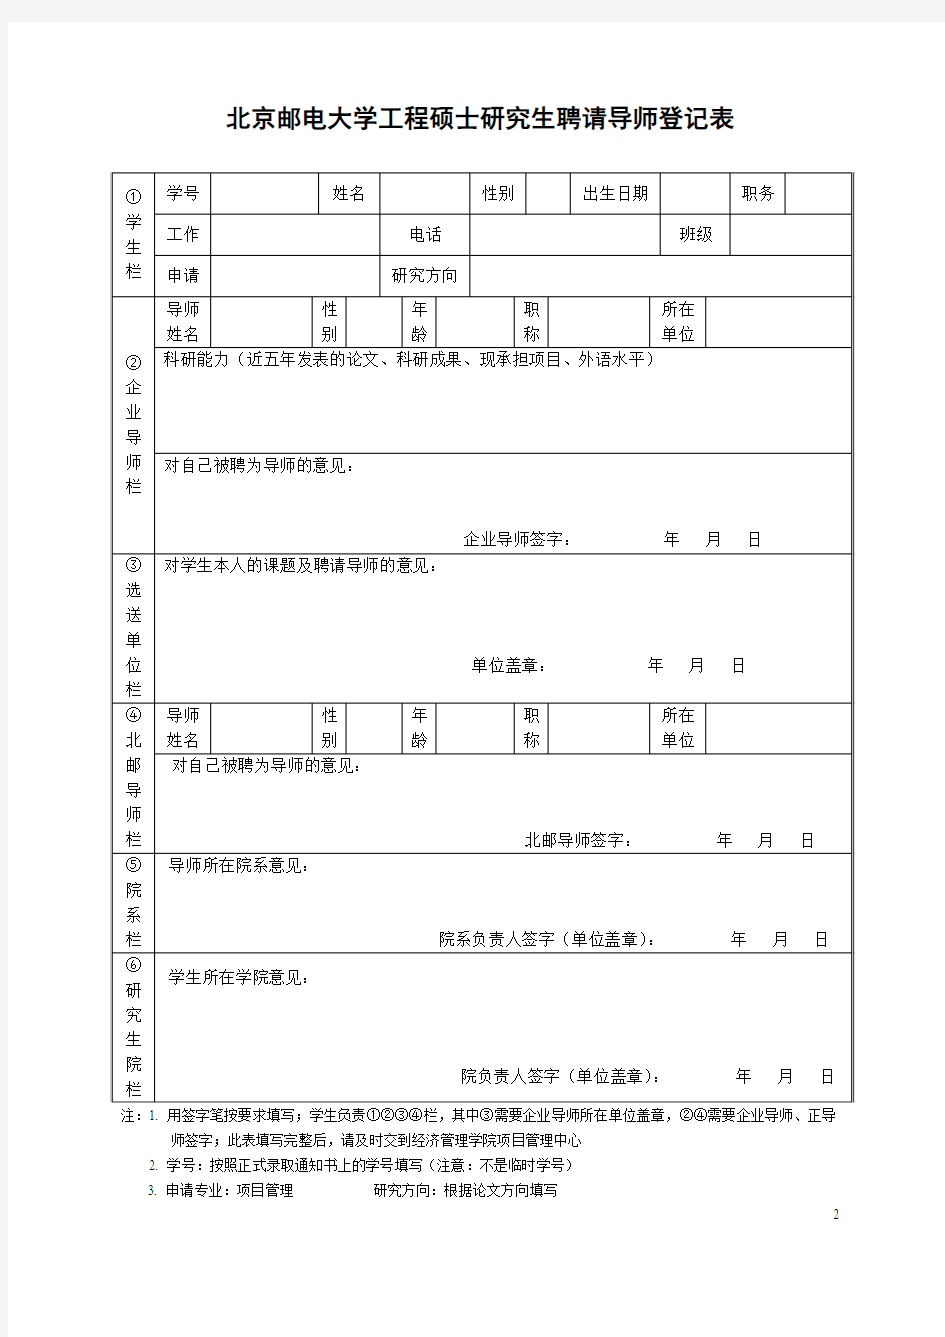 北京邮电大学研究生论文学生用表格